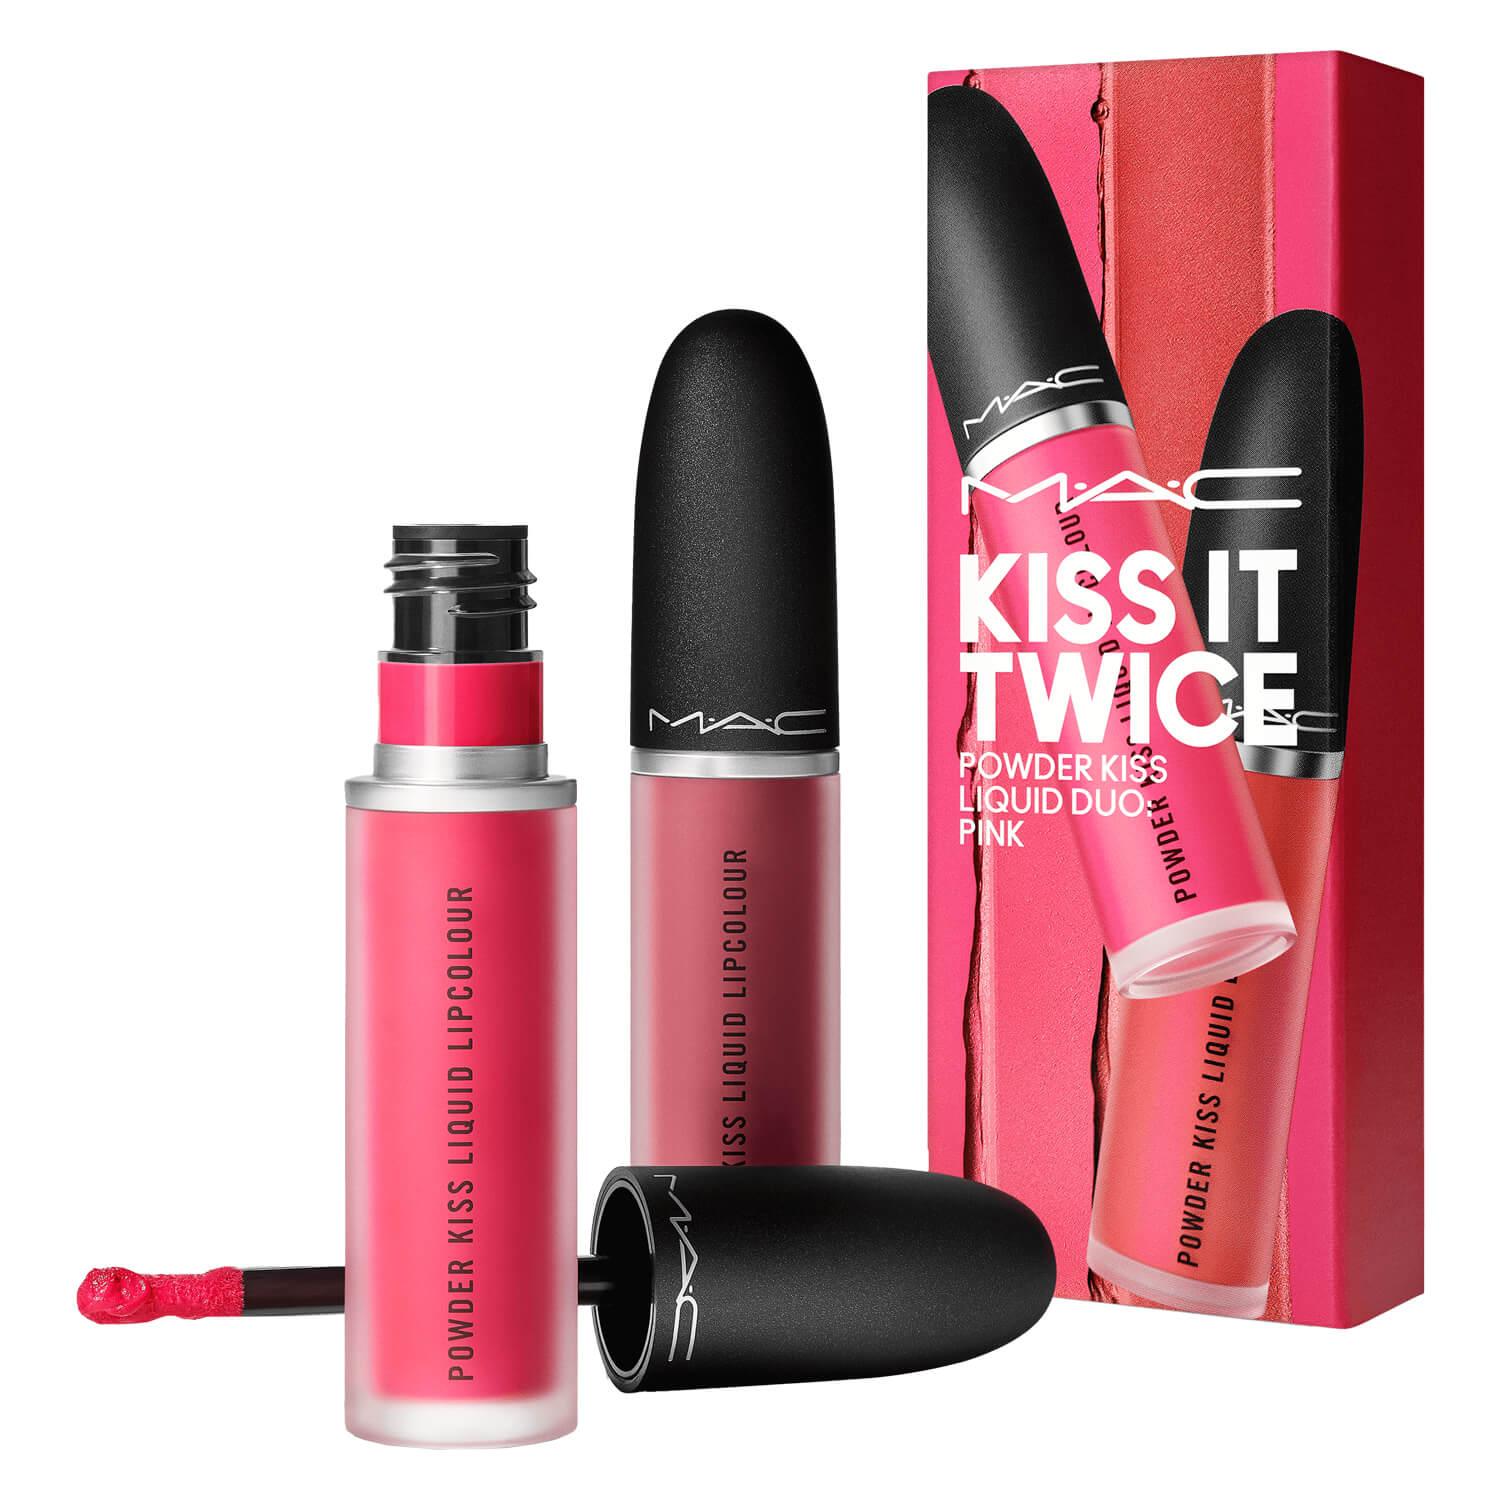 M·A·C Specials - Kiss It Twice Powder Kiss Liquid Duo Pink